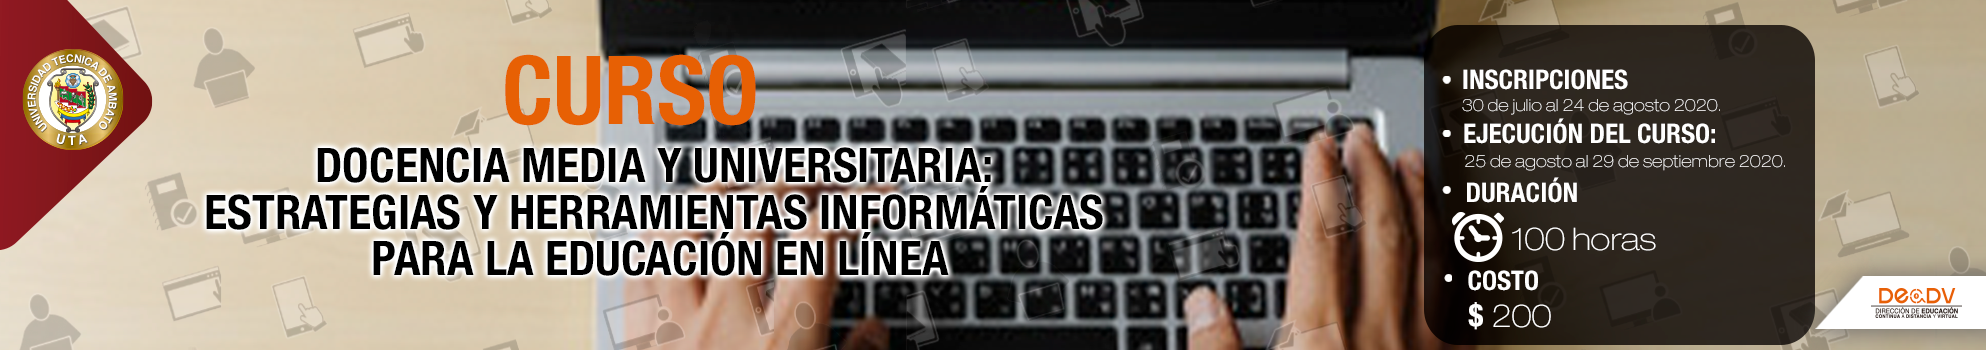 CURSO VIRTUAL: DOCENCIA MEDIA Y UNIVERSITARIA - ESTRATEGIAS Y HERRAMIENTAS INFORMÁTICAS PARA LA EDUCACIÓN EN LÍNEA